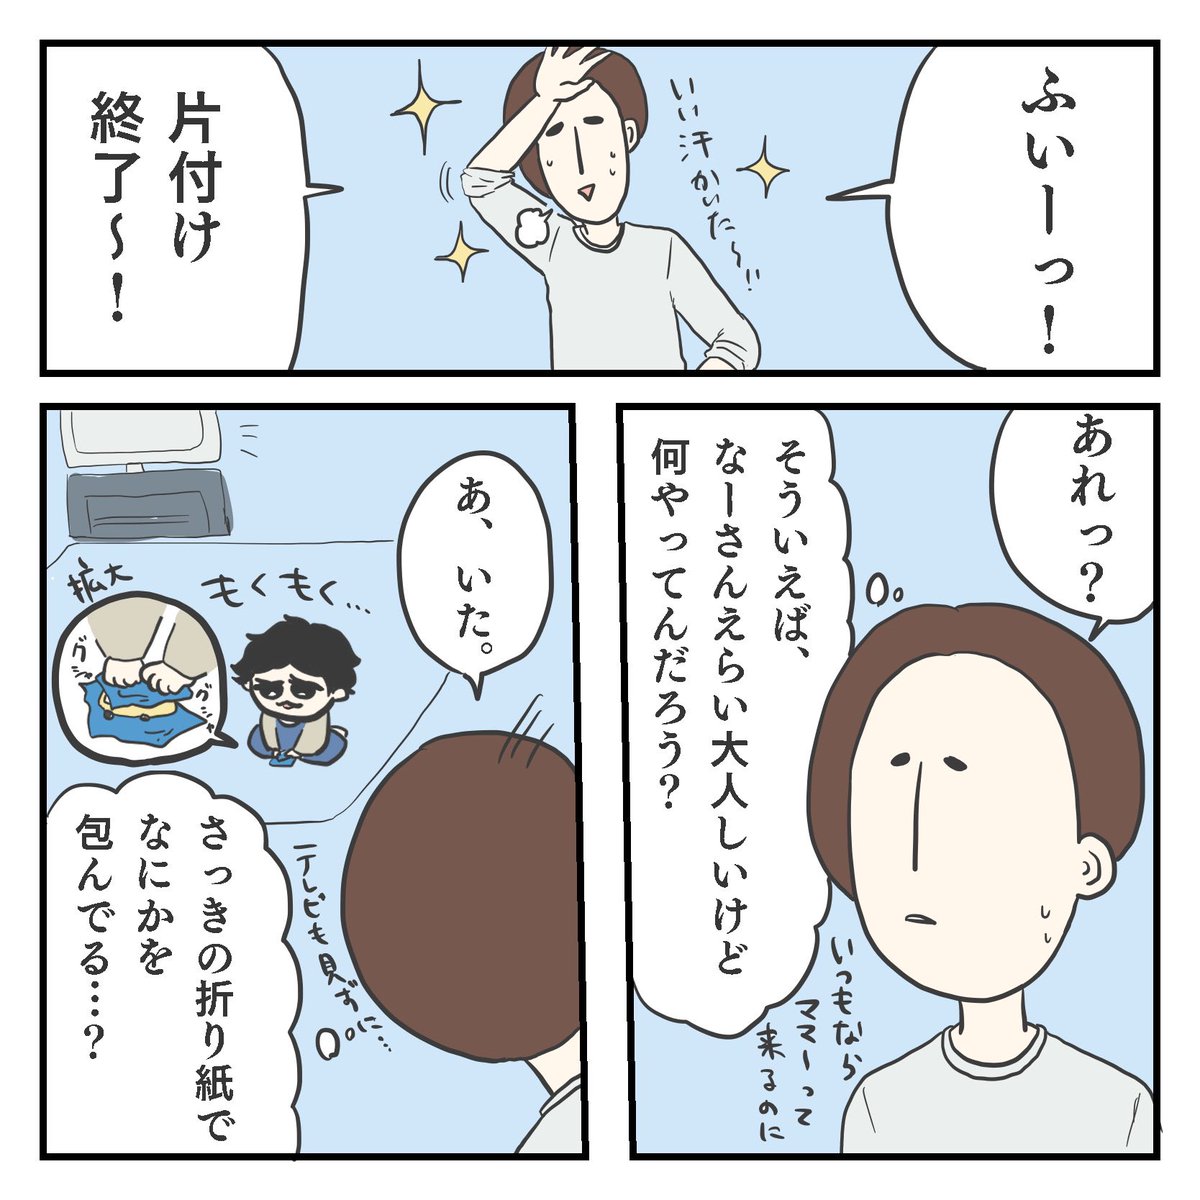 ぷれこんちょ(1/3)

育児漫画 